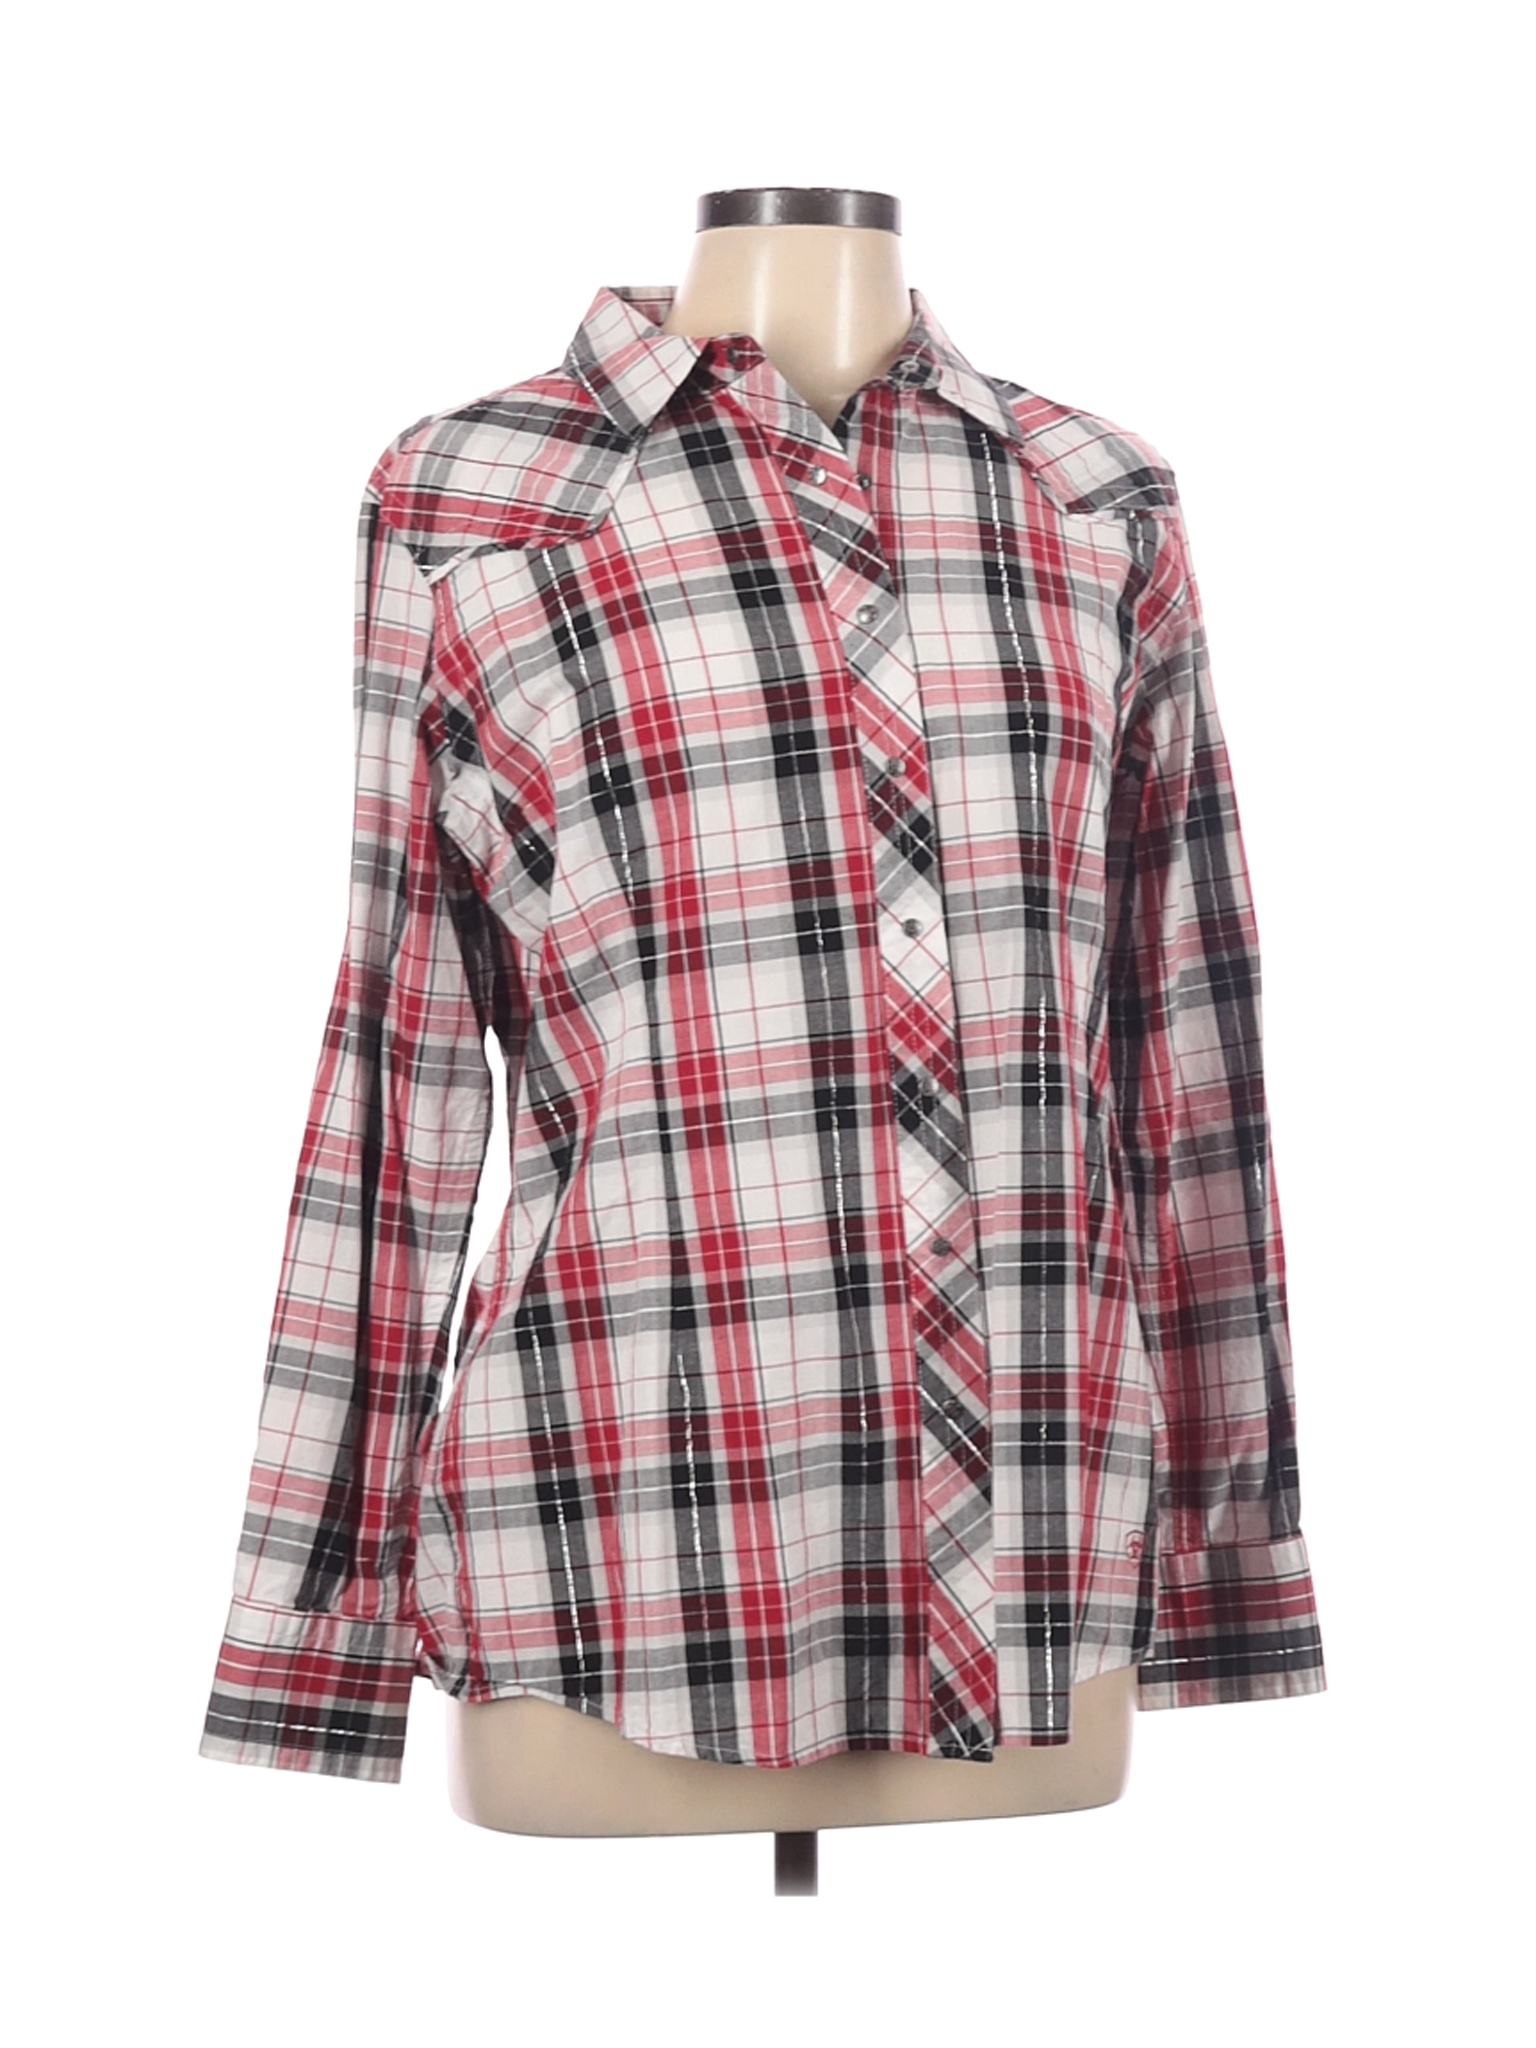 Ariat Women Red Long Sleeve Button-Down Shirt XL | eBay